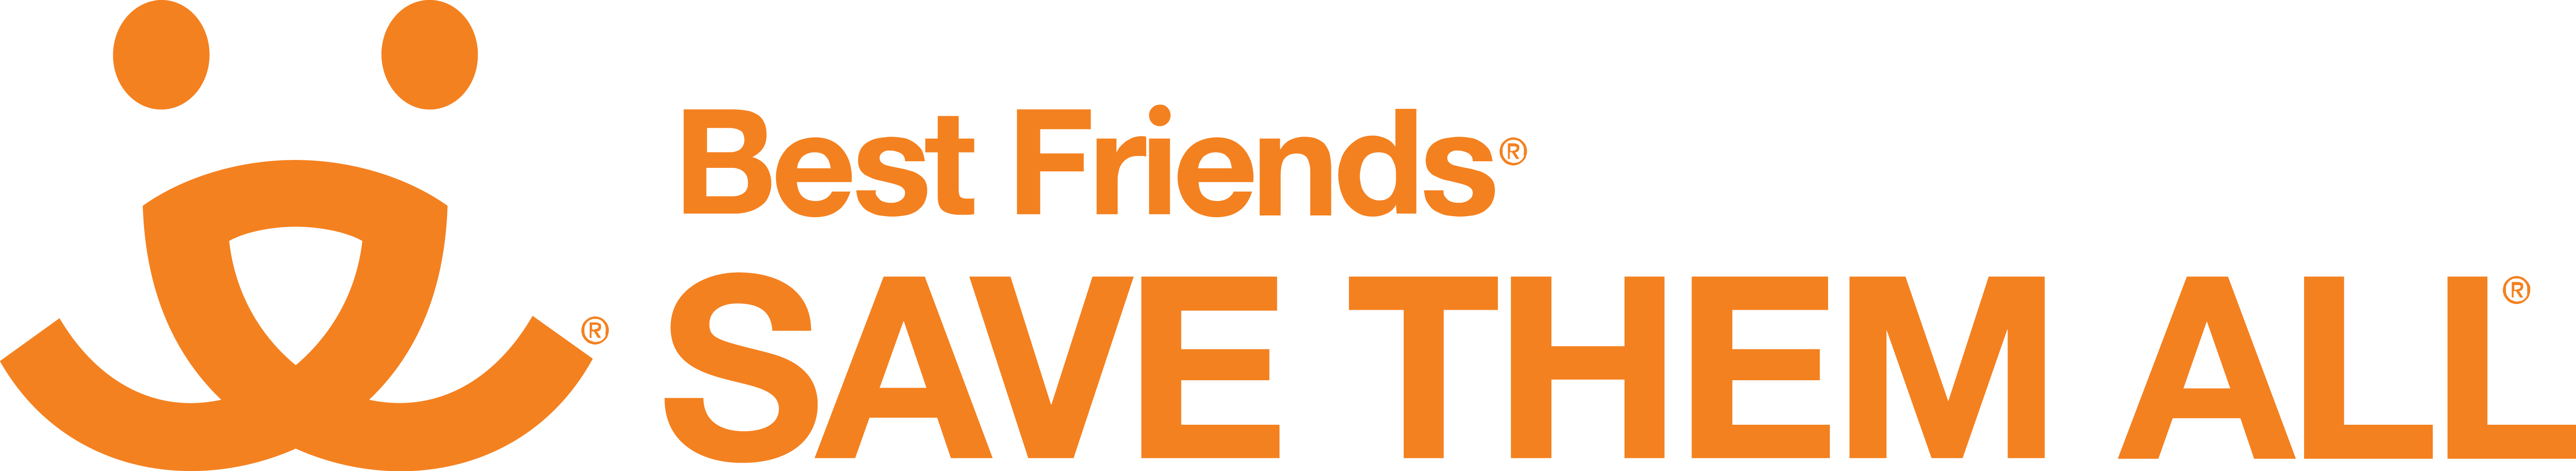 Best Friends Animal Society Logo - BFAS Logo [Best Friends Animal Society] Vector Free Download